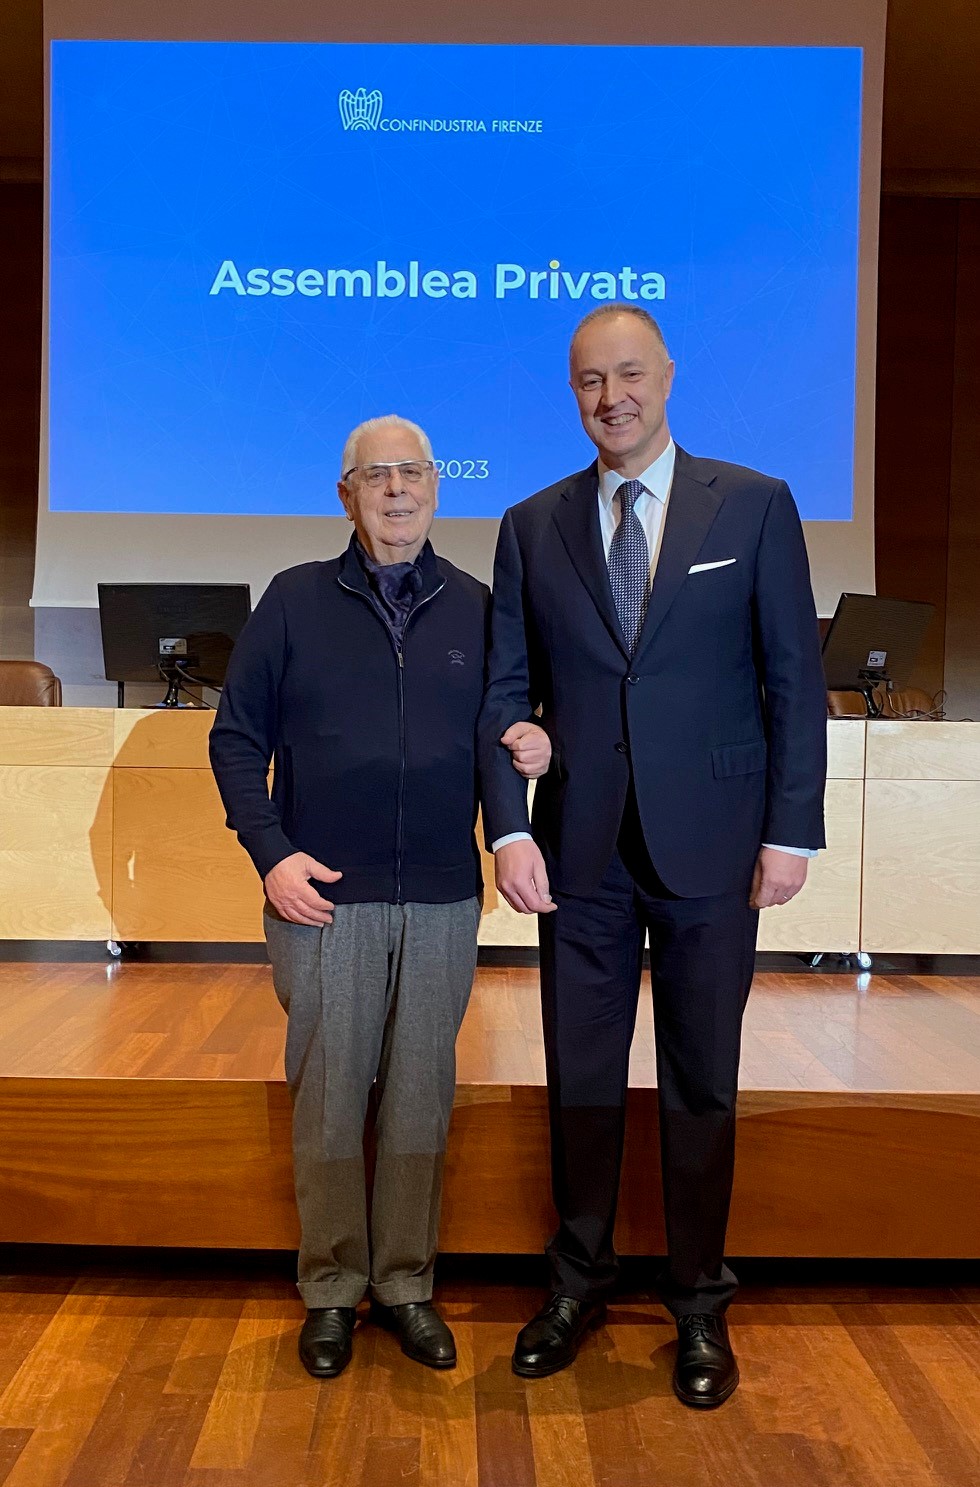 L’assemblea privata ha votato la squadra dei vice presidenti per il biennio e dato al presidente Bigazzi il mandato per l’integrazione con Livorno Massa Carrara